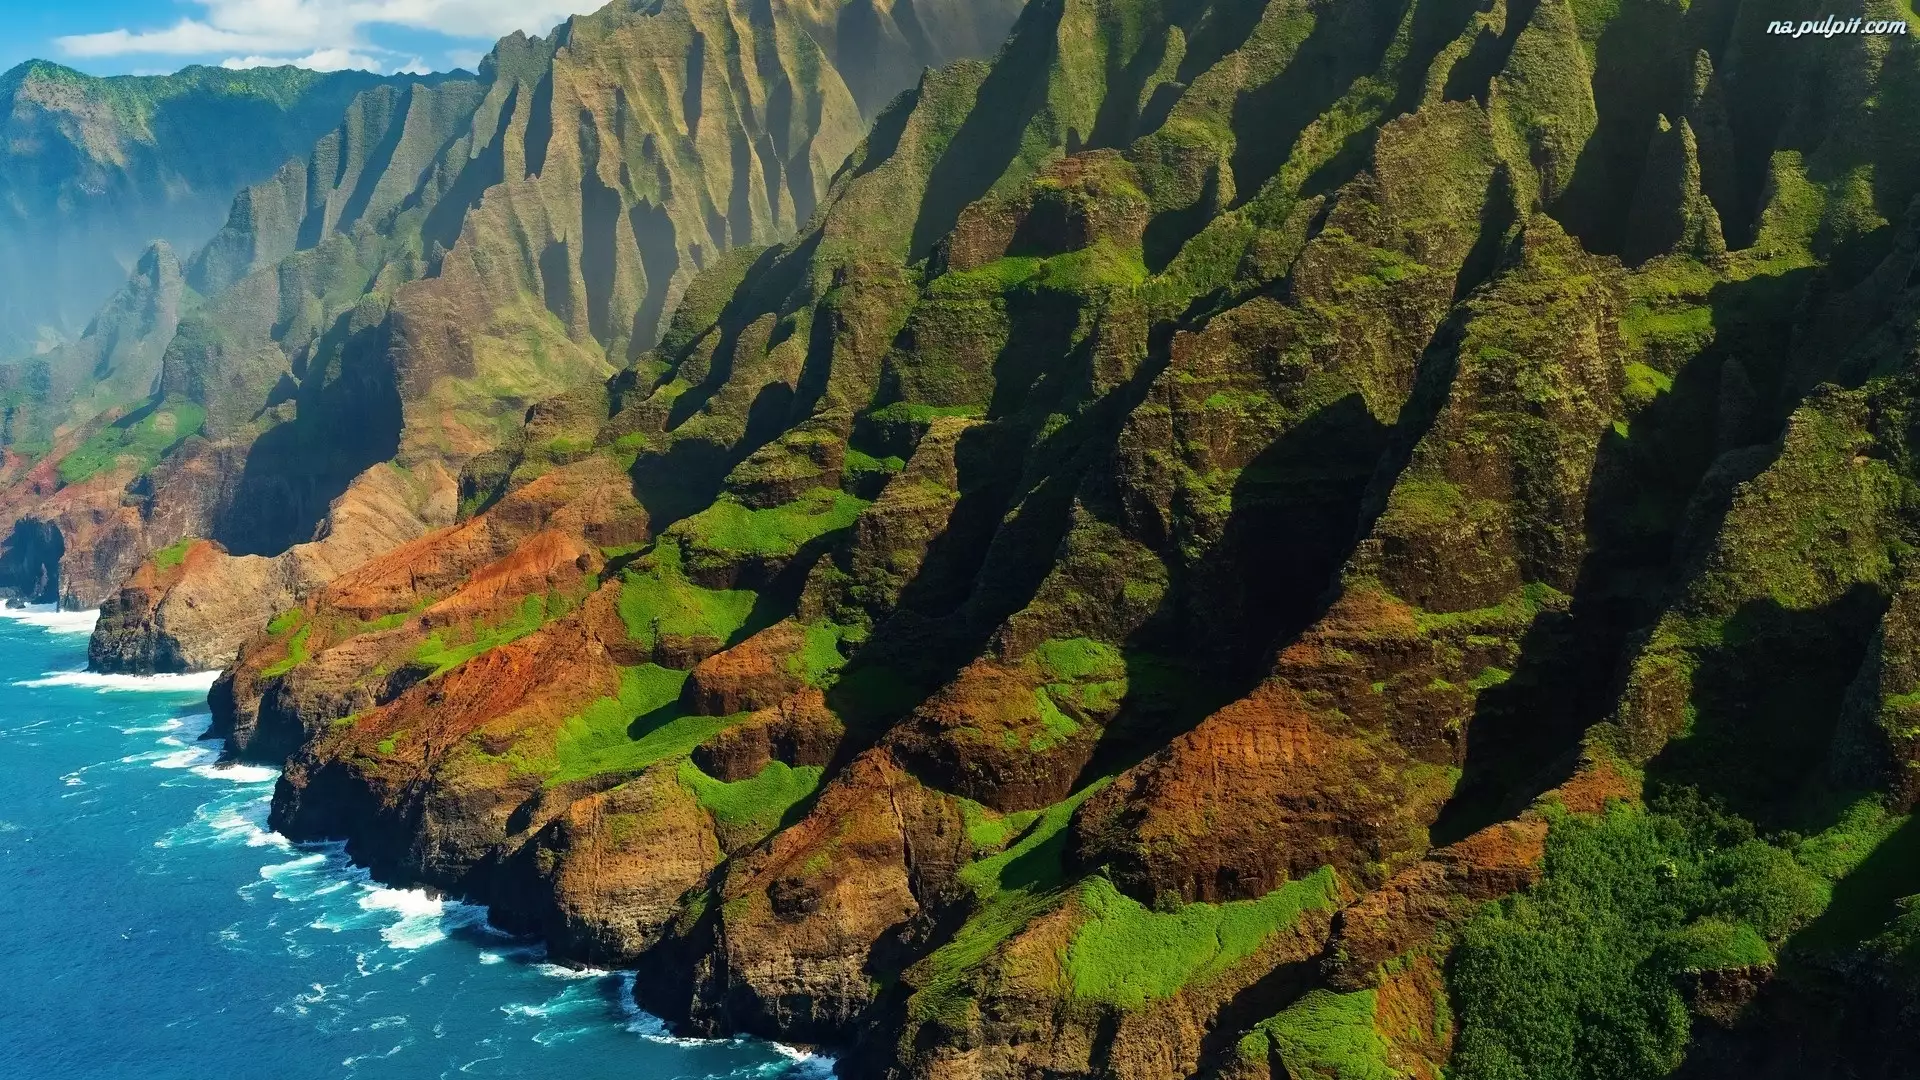 Morze, Góry, Na Pali Coast State Park, Stany Zjednoczone, Napali Coast, Hawaje